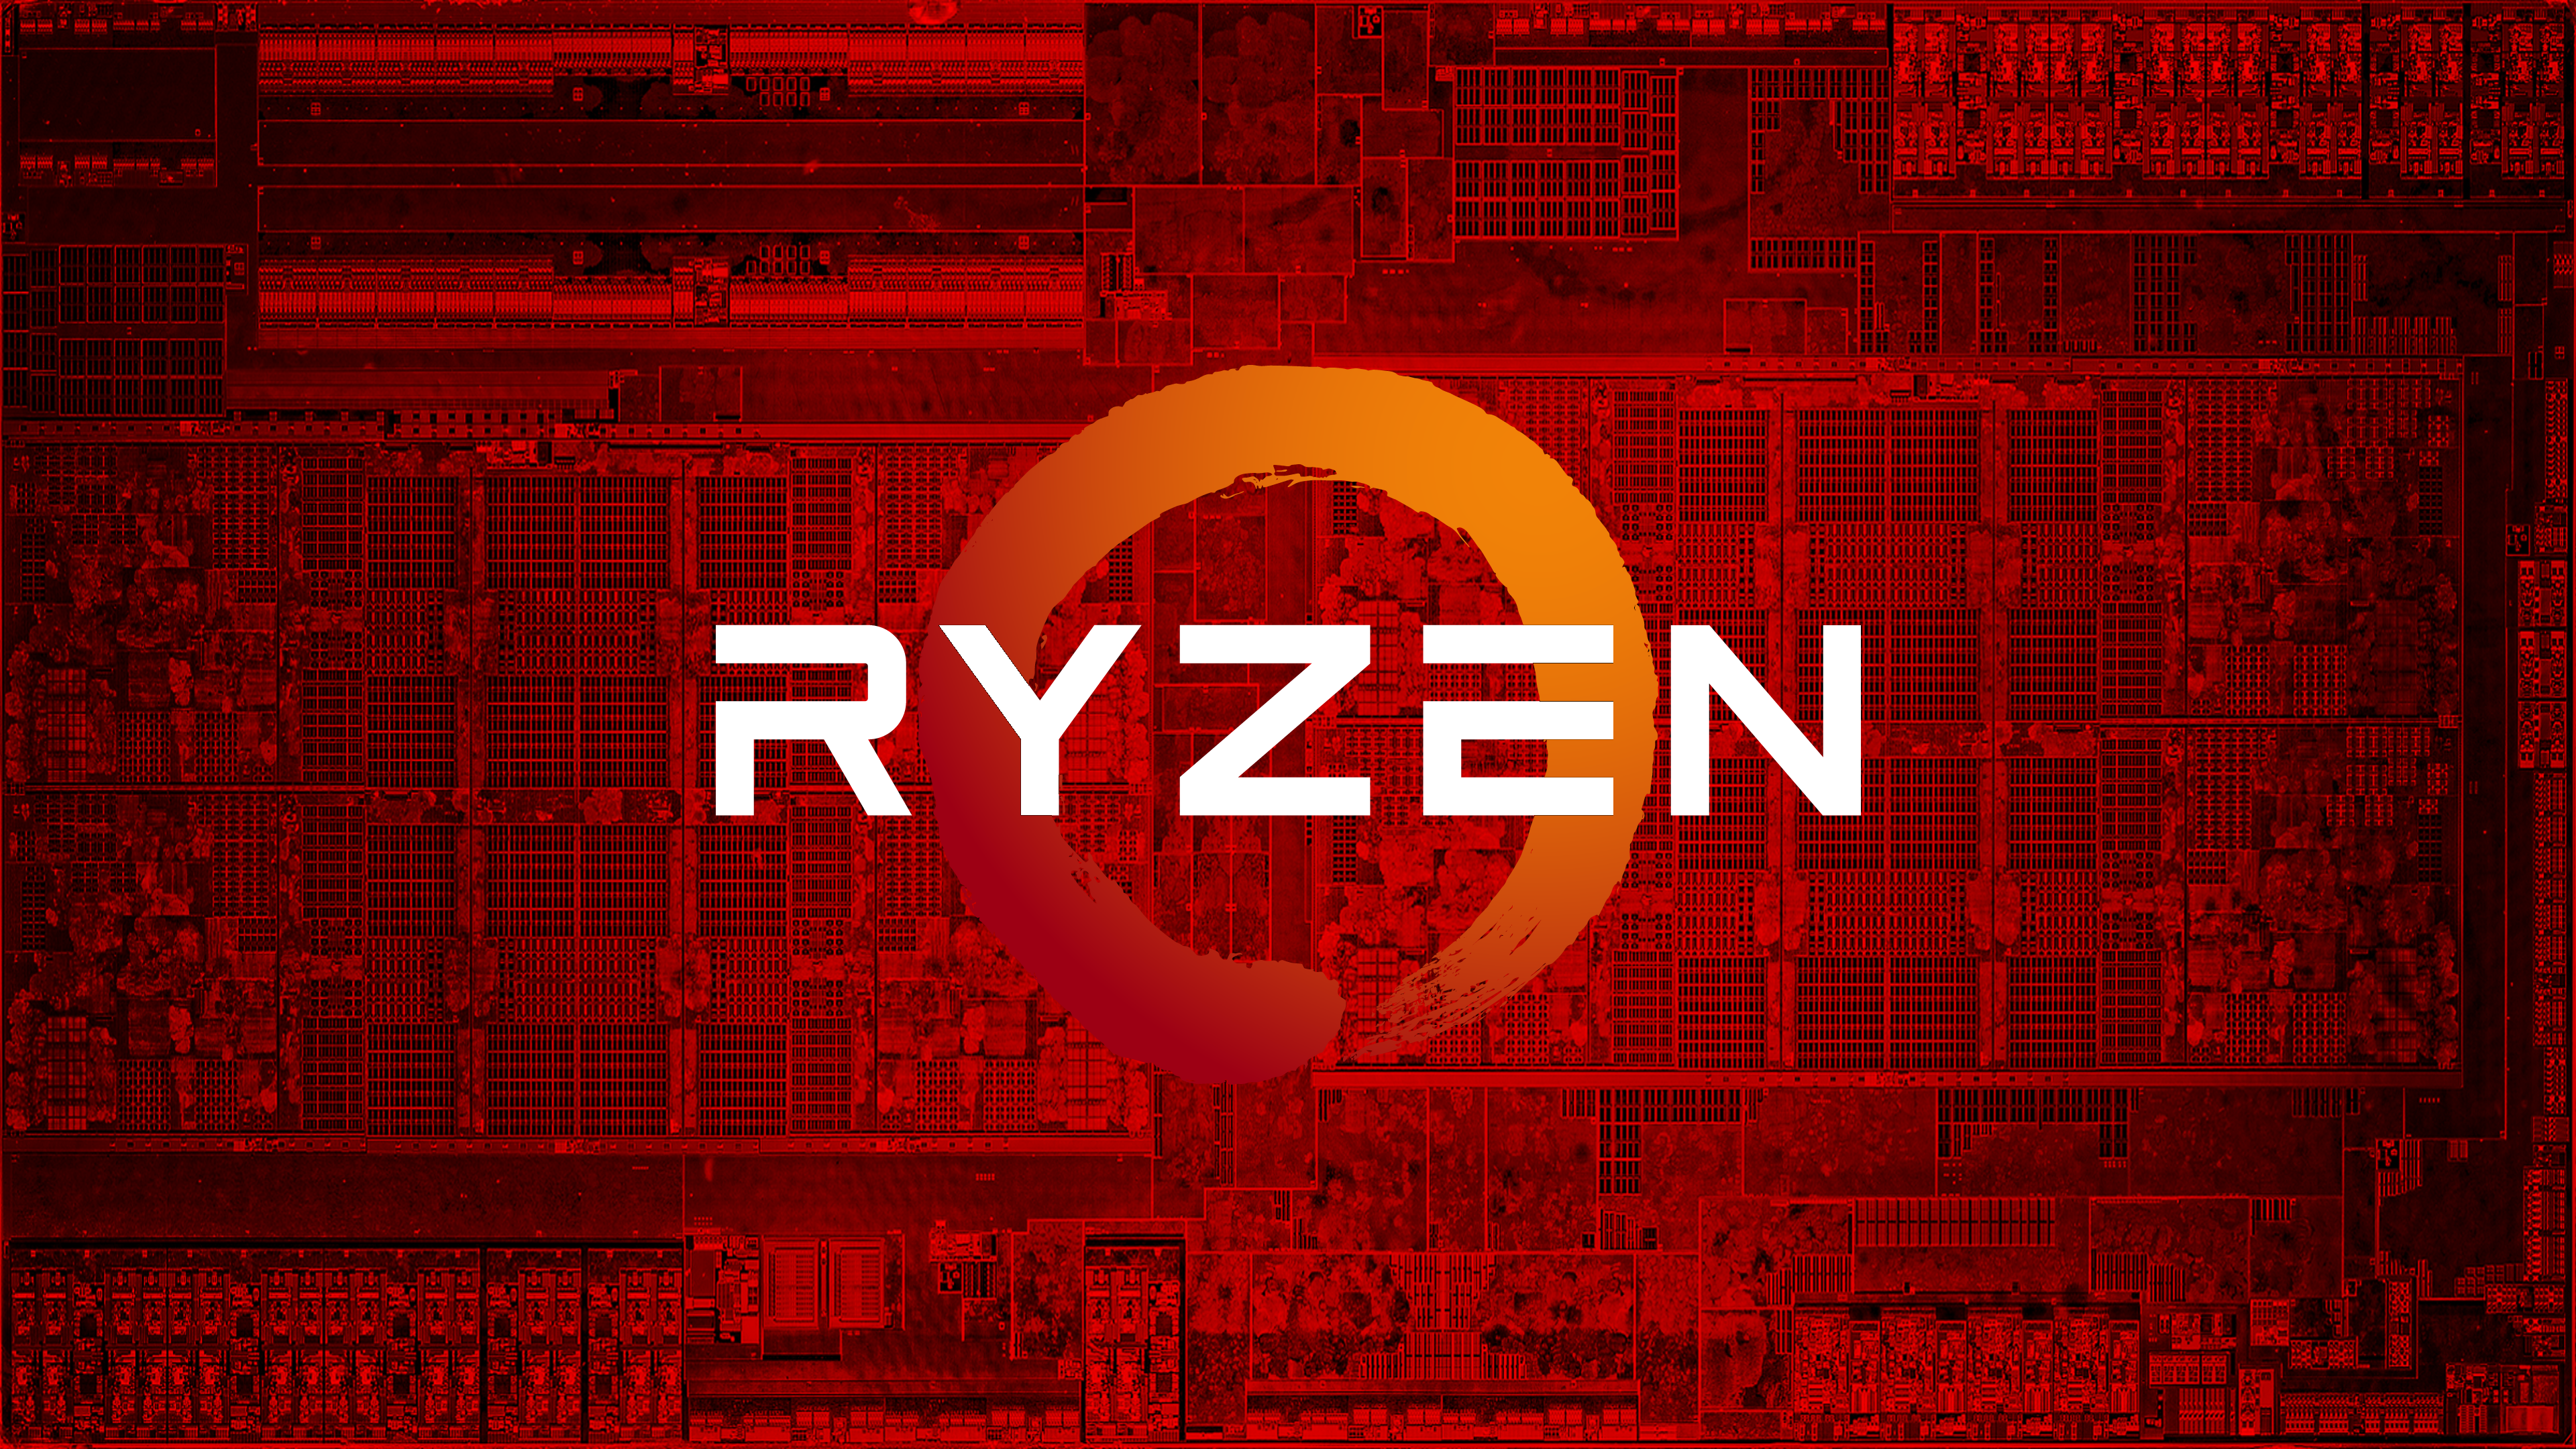 Rätsel AMD Ryzen 9 5900, Ryzen 7 5800 CPUs, 5700G- und 5600G-APUs erscheinen online und schlagen OEM-spezifische Prozessoren vor?